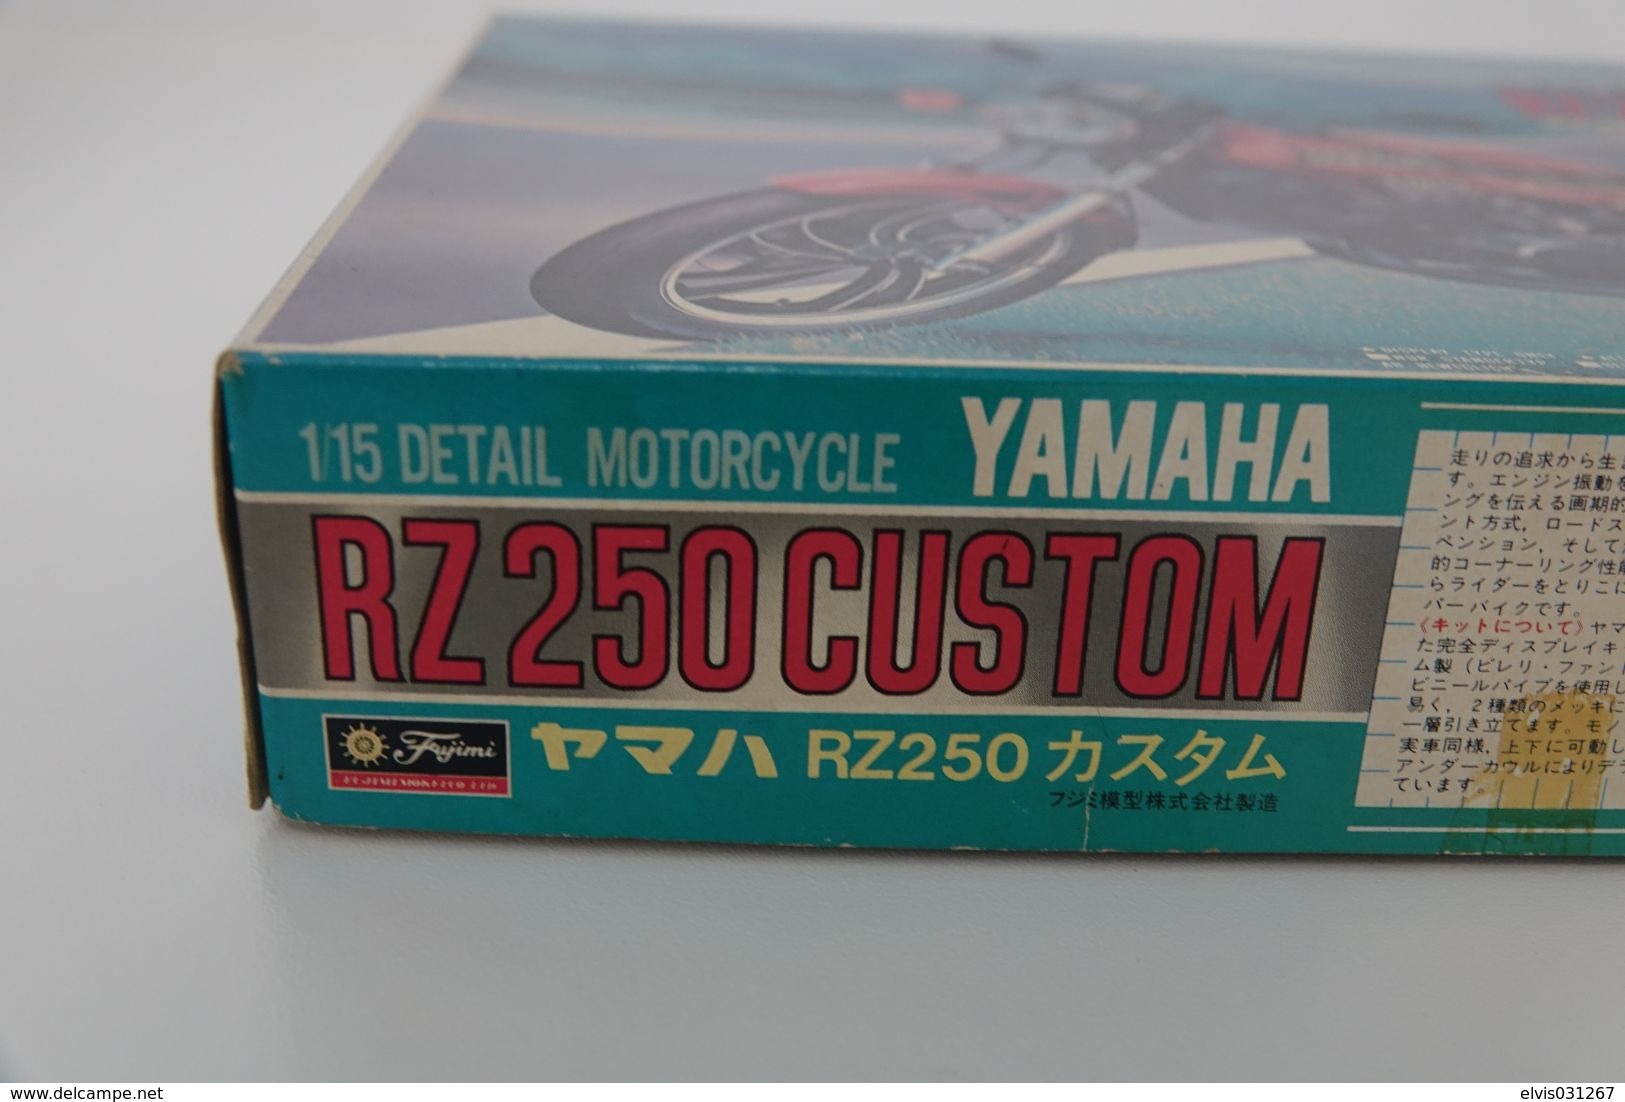 Vintage MODEL KIT : Fujimi - YAMAHA RA250 CUSTOM, Series 11 , Sealed NOS MIB, Scale 1/15, Vintage 1980's - Scale 1:32